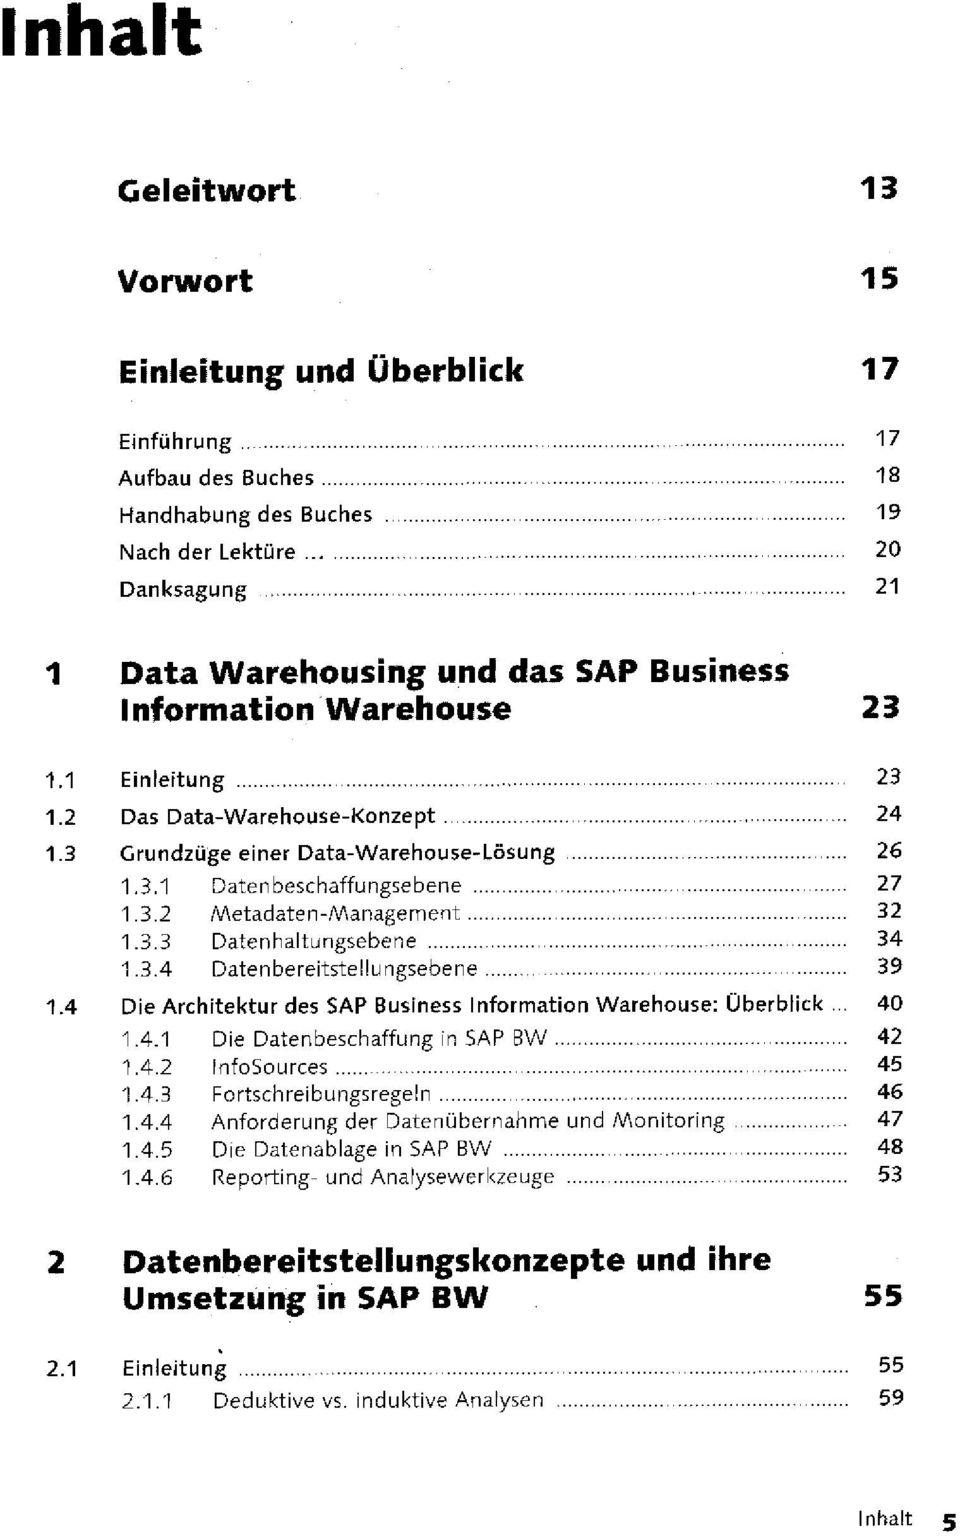 3.4 Datenbereitstellungsebene 39 1.4 Die Architektur des SAP Business Information Warehouse: Überblick... 40 1.4.1 Die Datenbeschaffung in SAP BW 42 1.4.2 InfoSources 45 1.4.3 Fortschreibungsregeln 46 1.